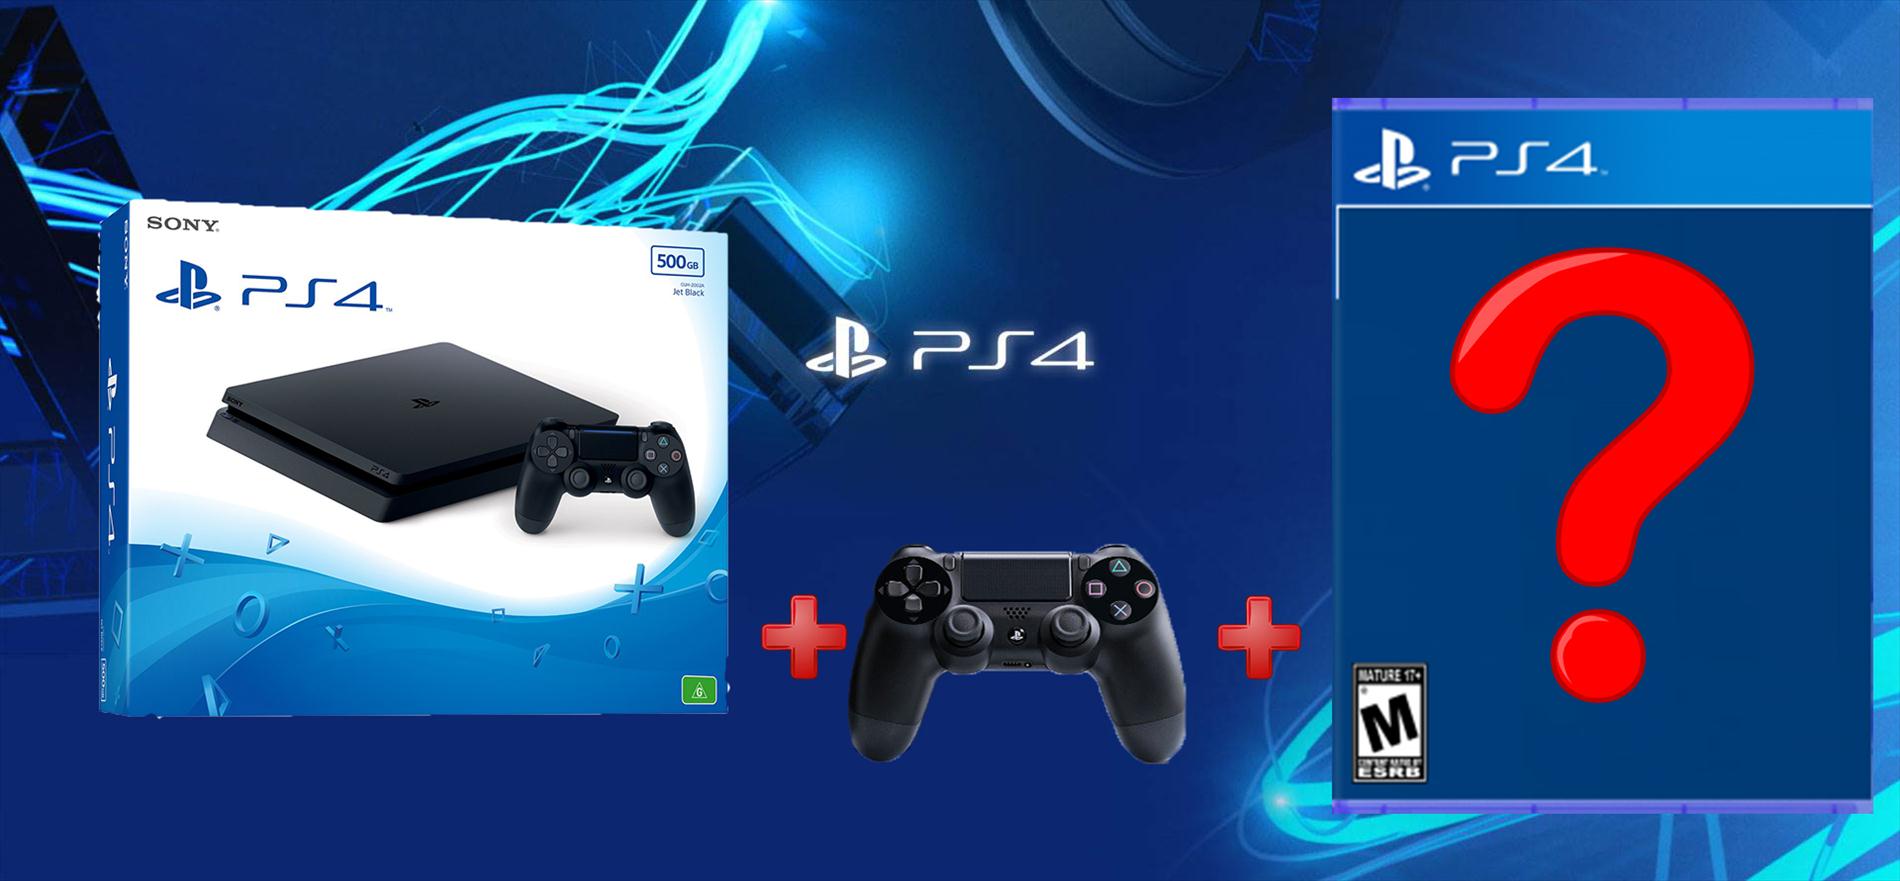 קונסולת Playstation 4 Slim  + שלט נוסף + משחק לבחירה